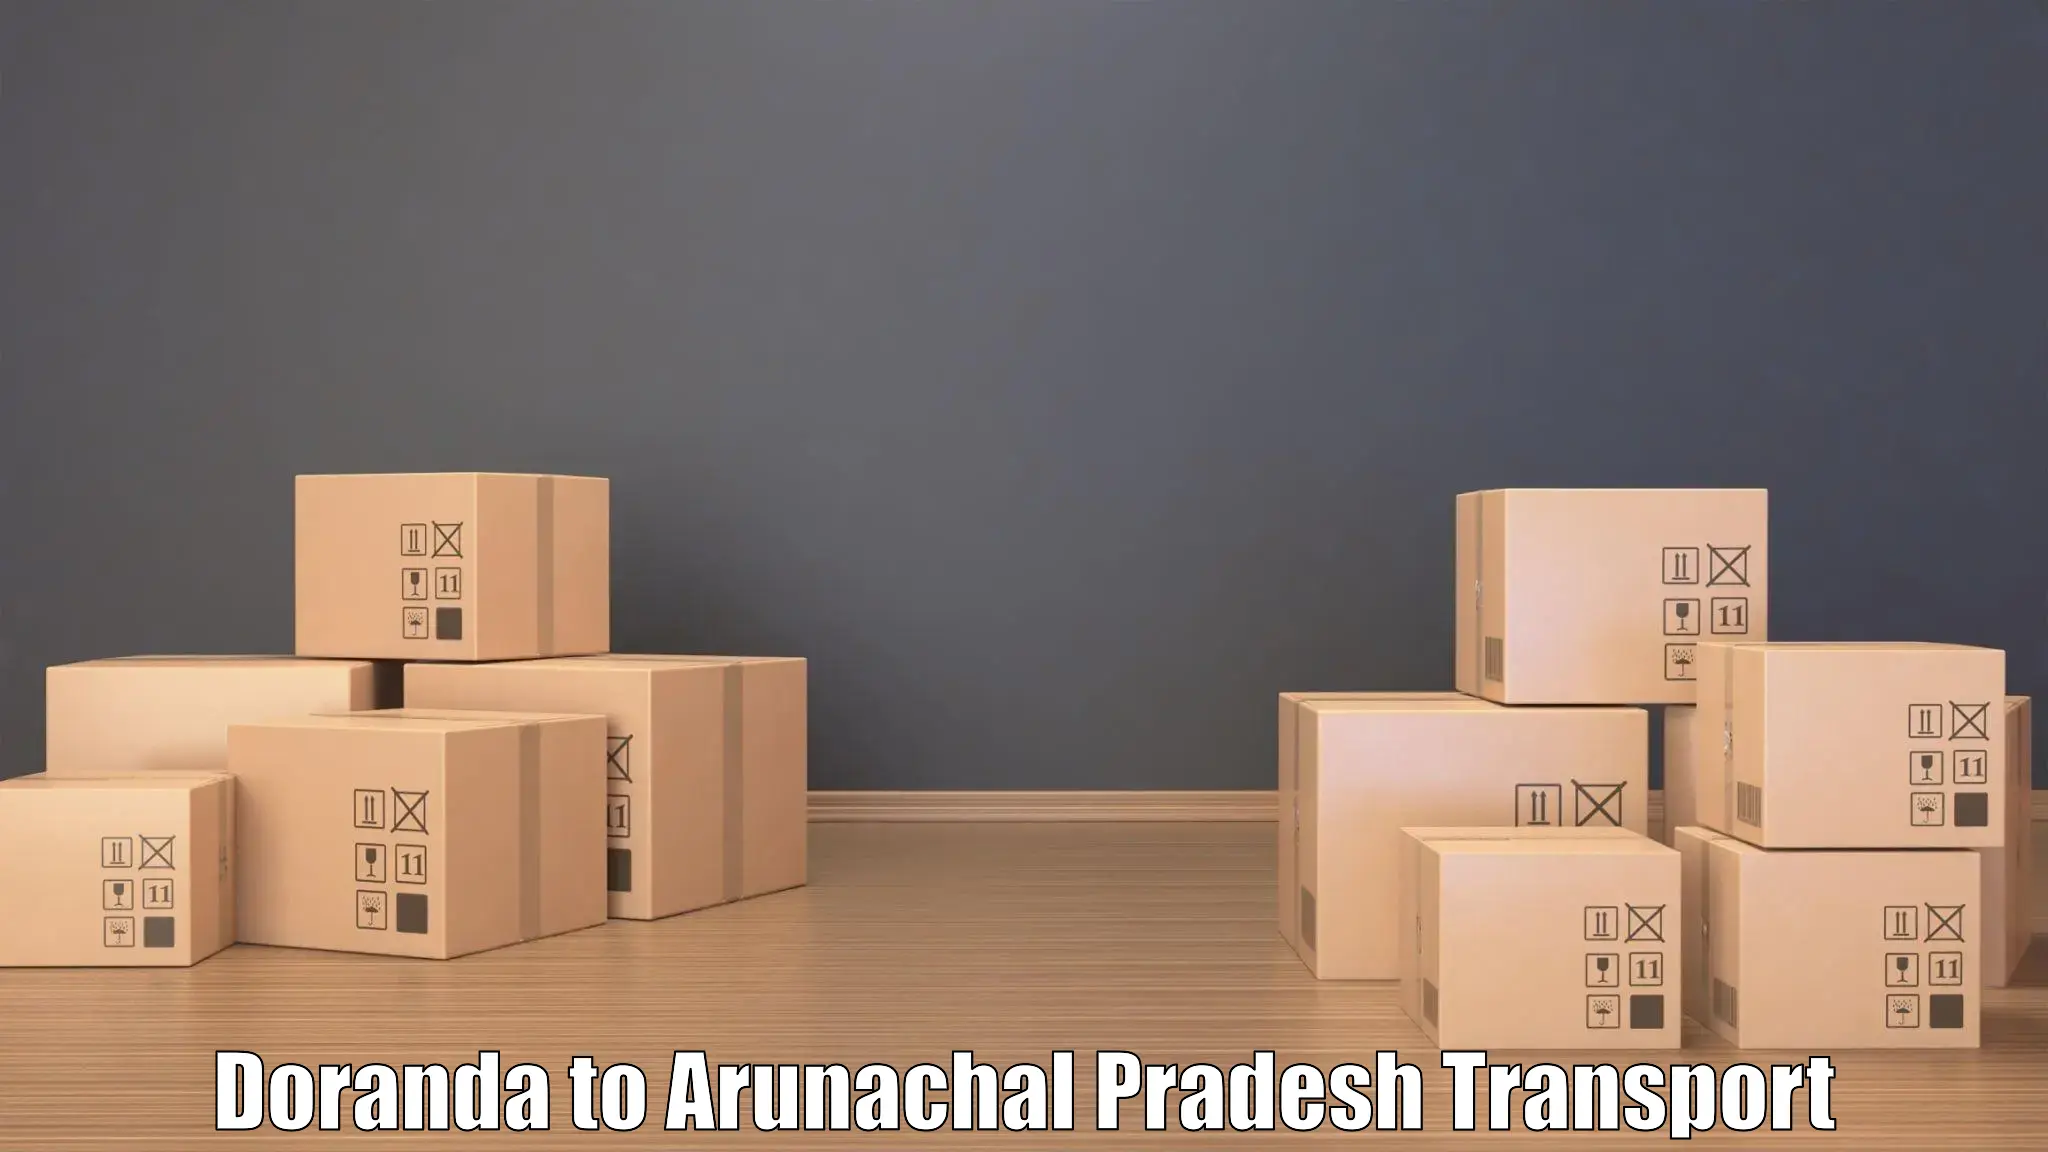 Interstate transport services in Doranda to Arunachal Pradesh